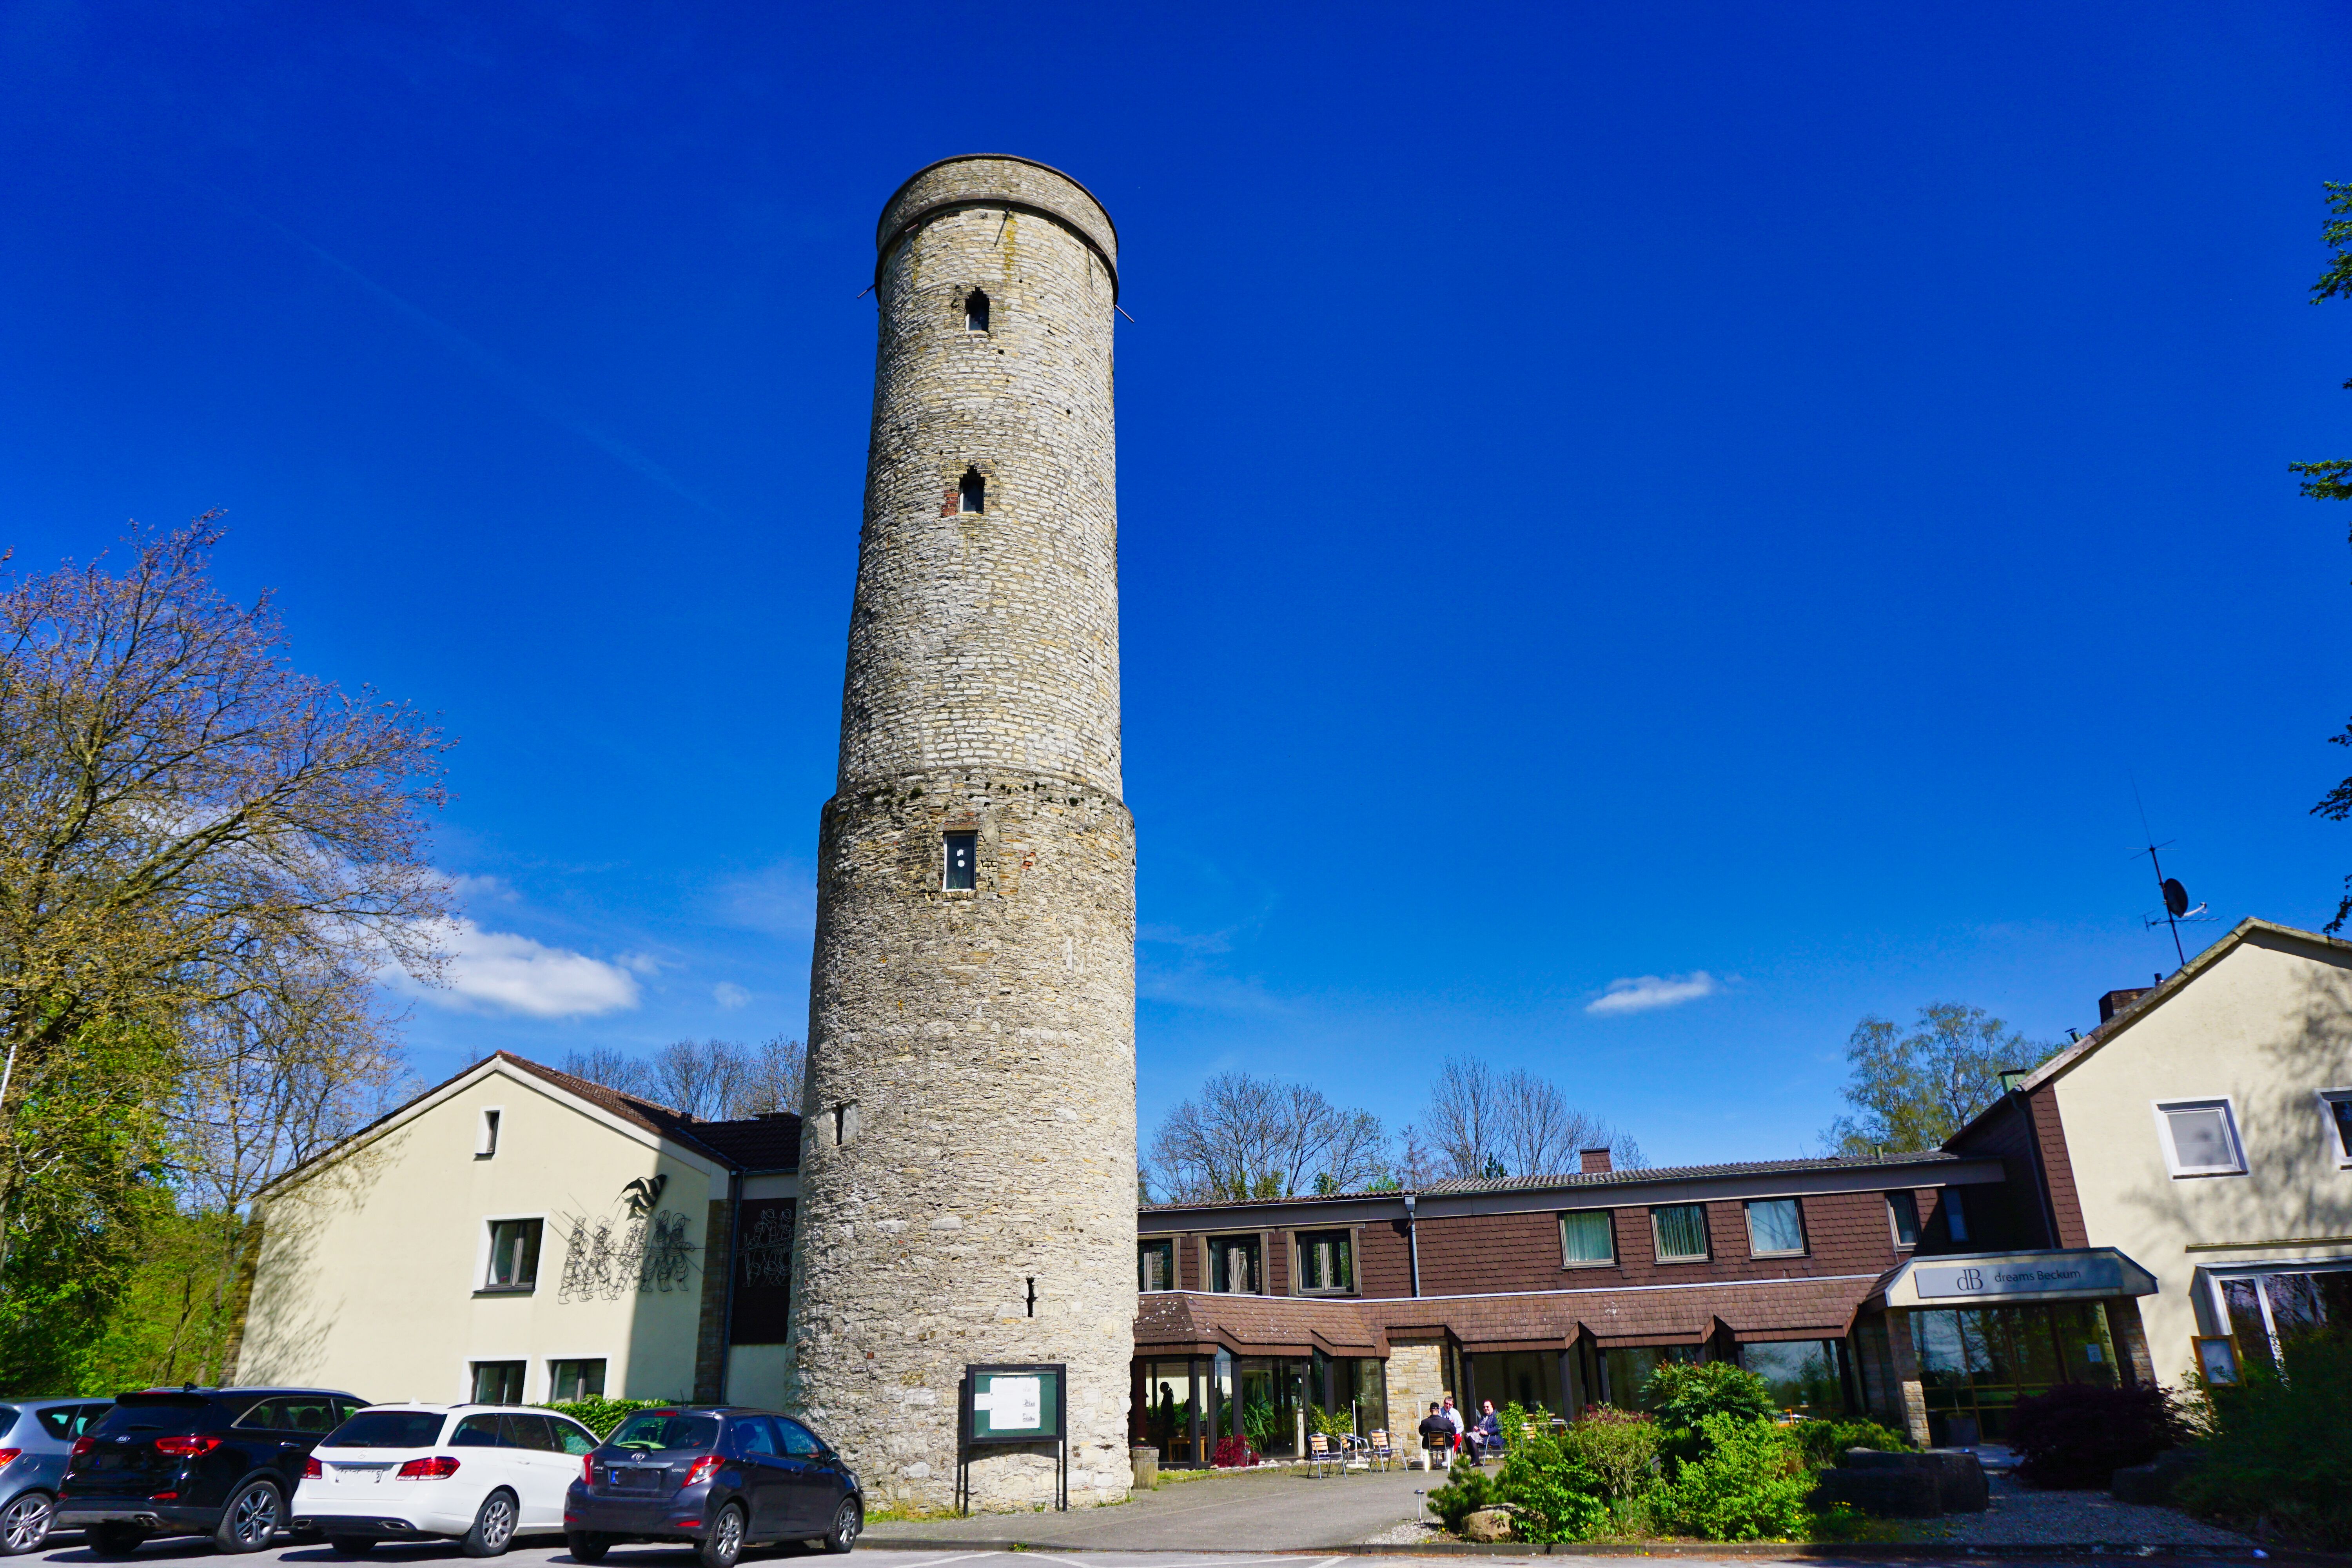 Turm der Soestwarte auf dem Höxberg, Beckum.
